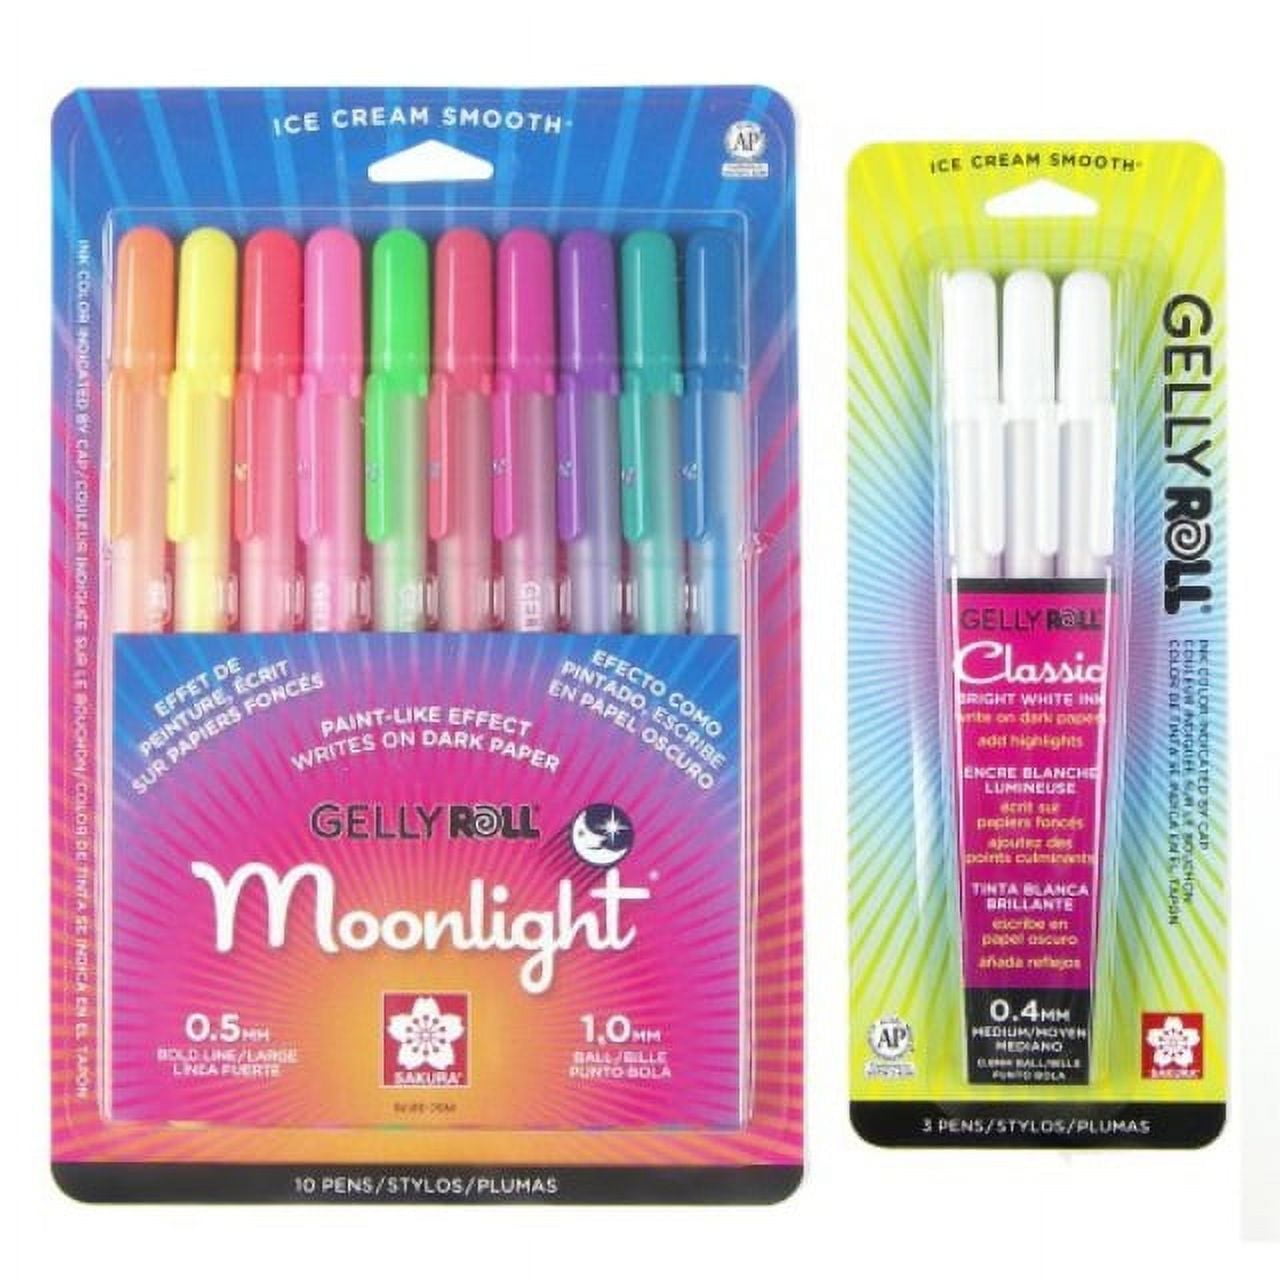 Sakura Gelly Roll Moonlight 10 Color Pack Pen Set and a Gelly Roll Medium  Point White 3 Pack Pen Set 